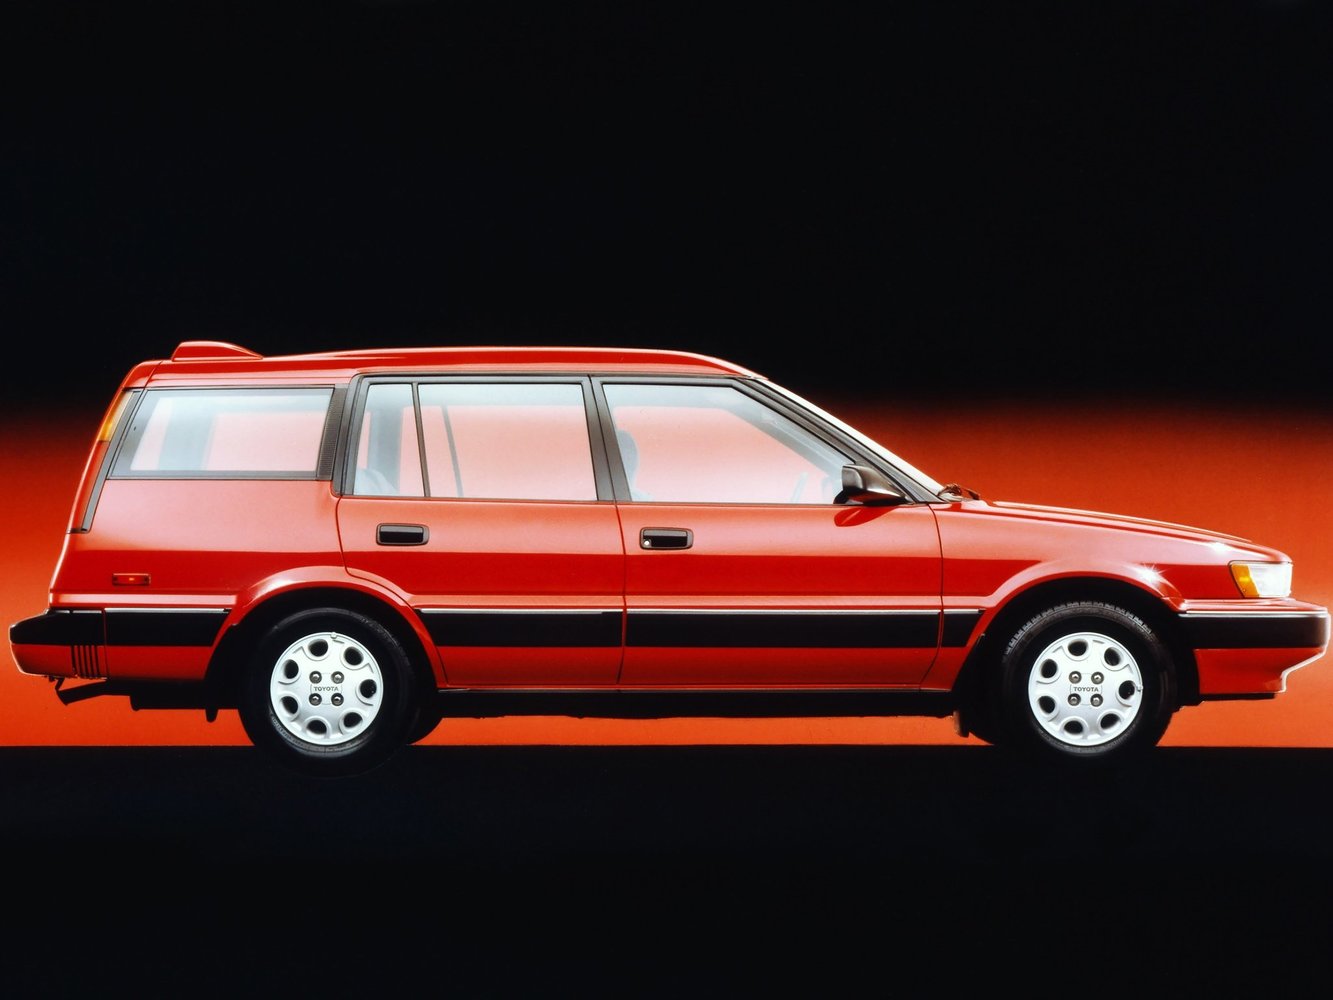 универсал Toyota Corolla 1987 - 1991г выпуска модификация 1.3 AT (75 л.с.)